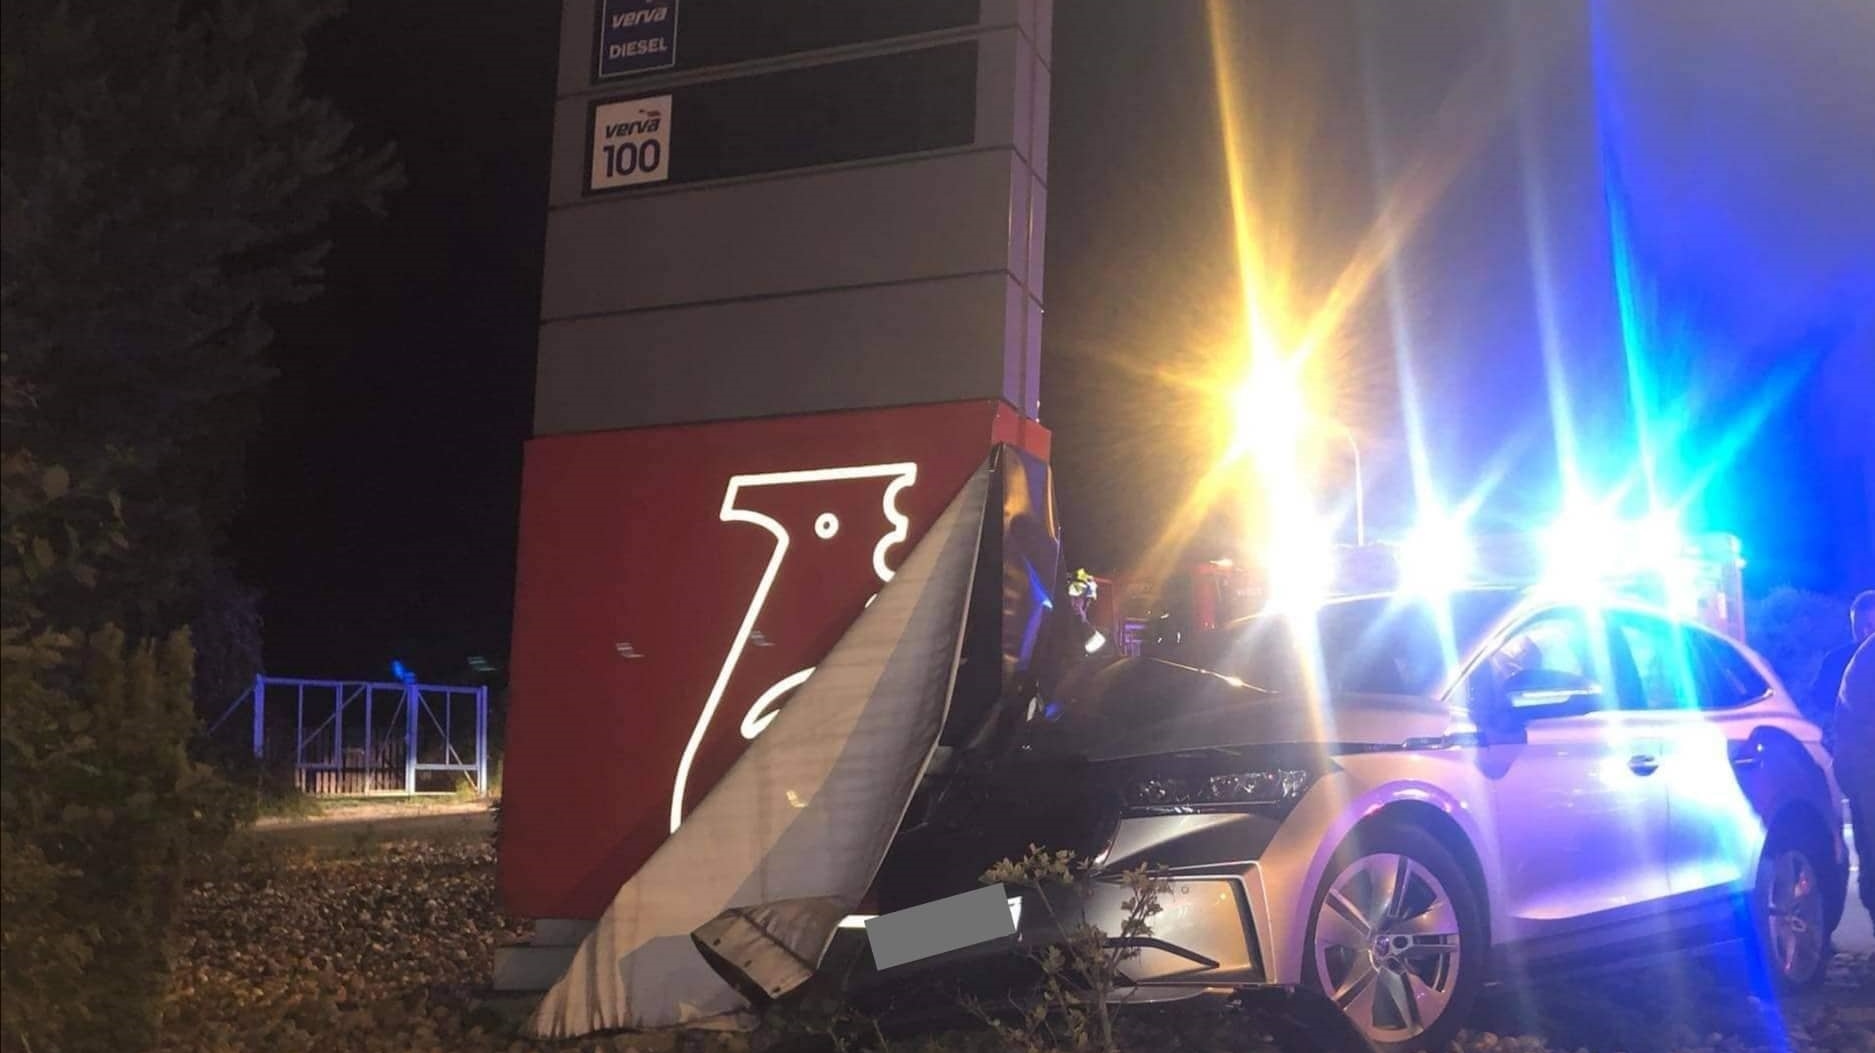 Děčín: Německý řidič havaroval u čerpací stanice. Skončil v nemocnici